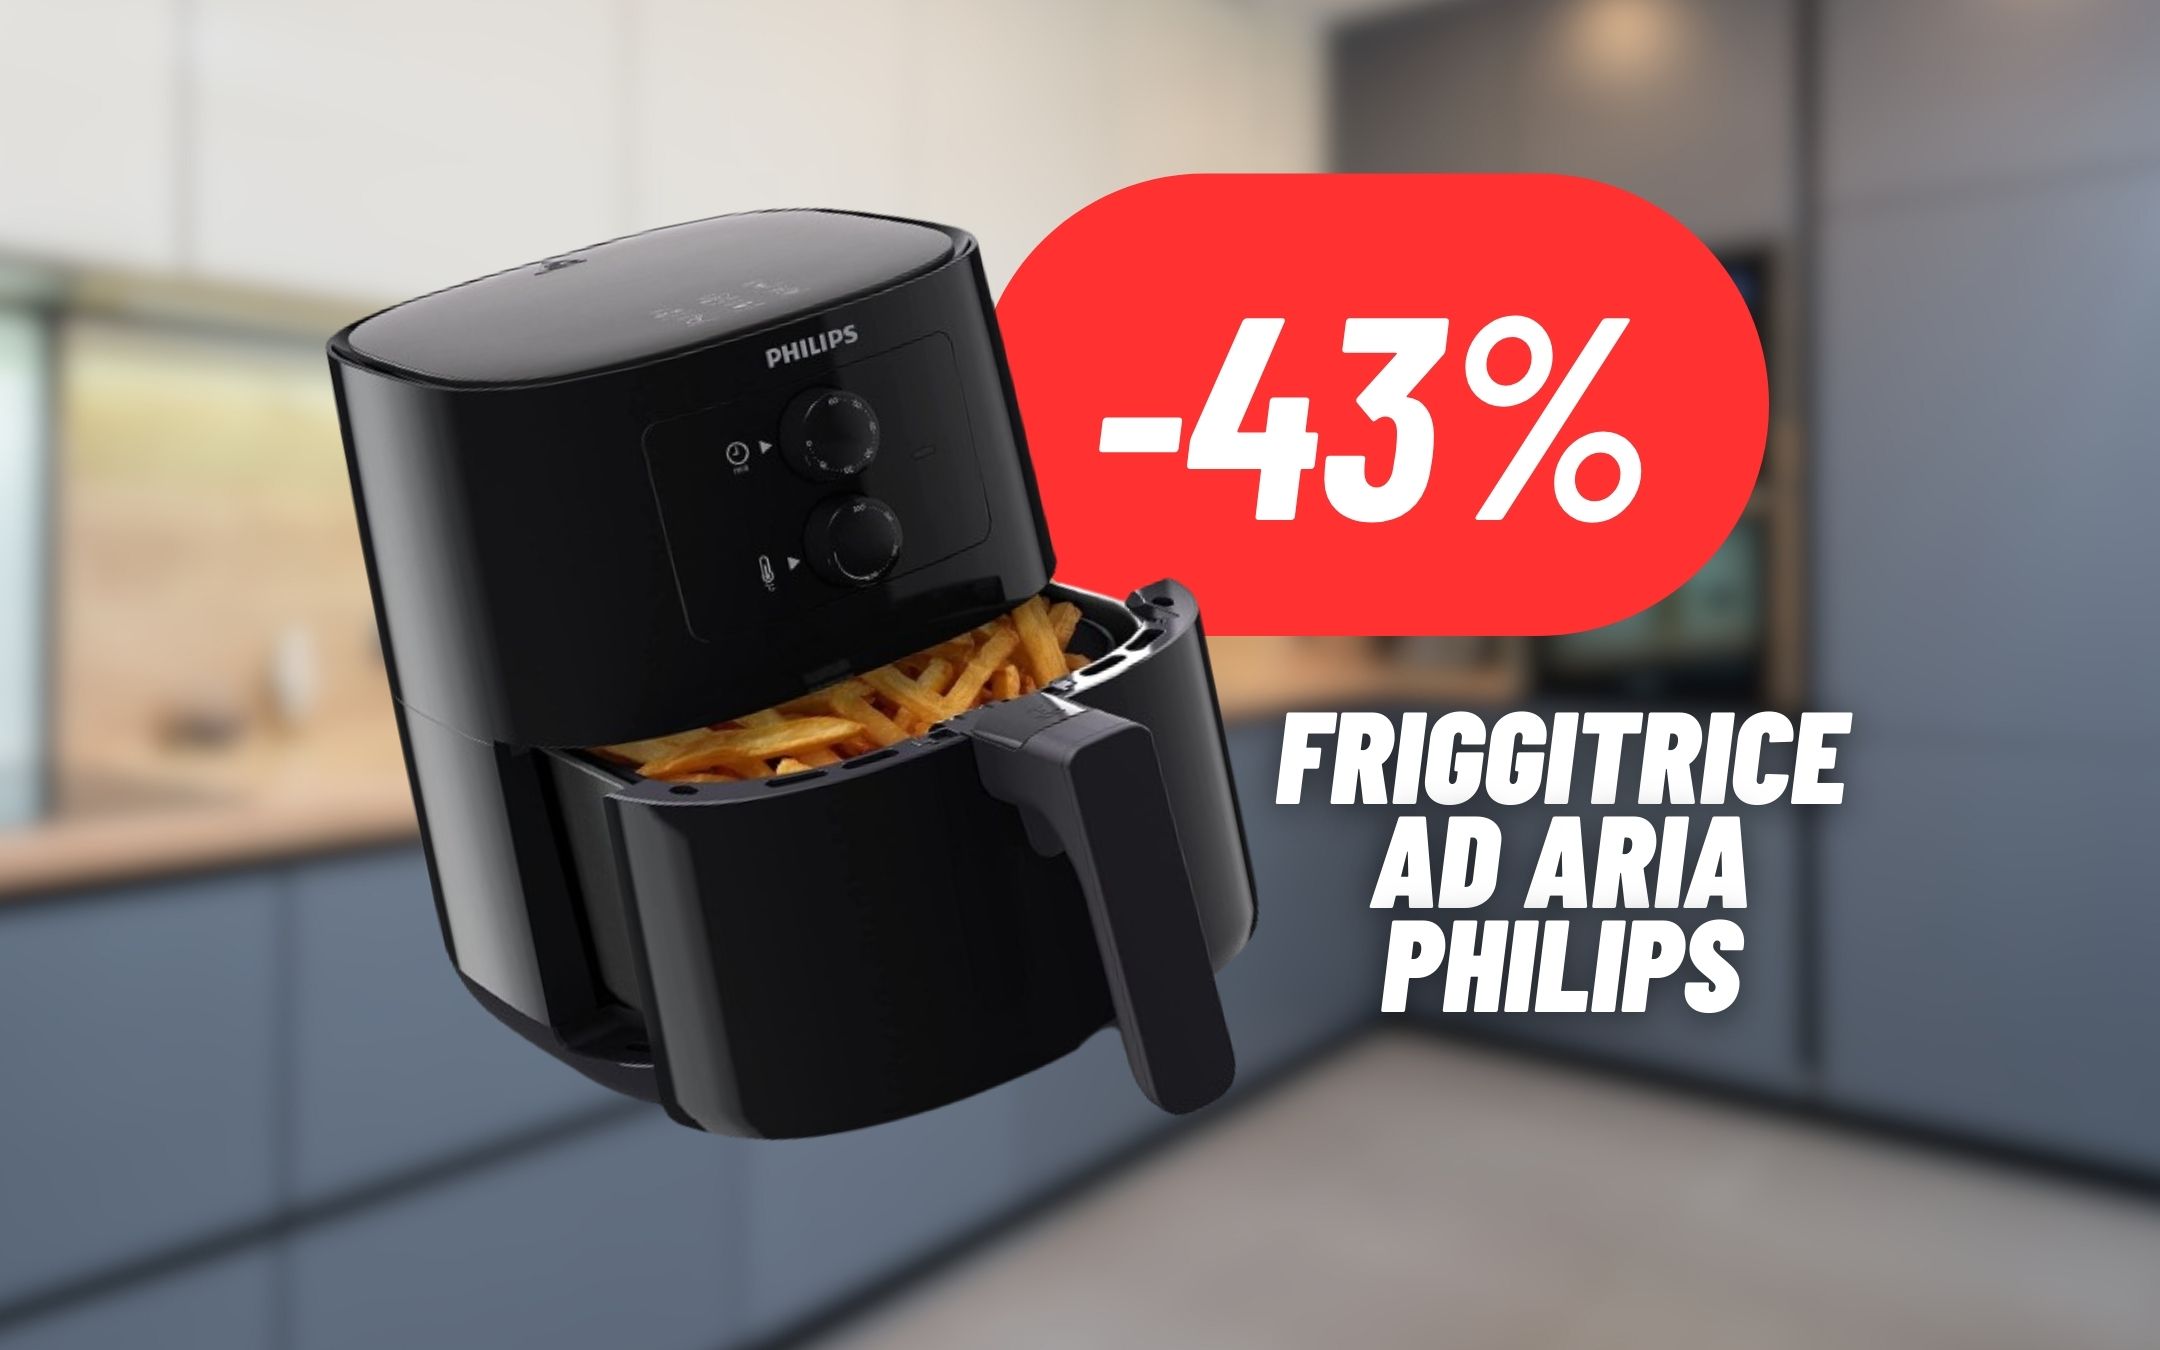 SCONTO FOLLE sulla friggitrice ad aria Philips:  FUORI TUTTO (-43%)